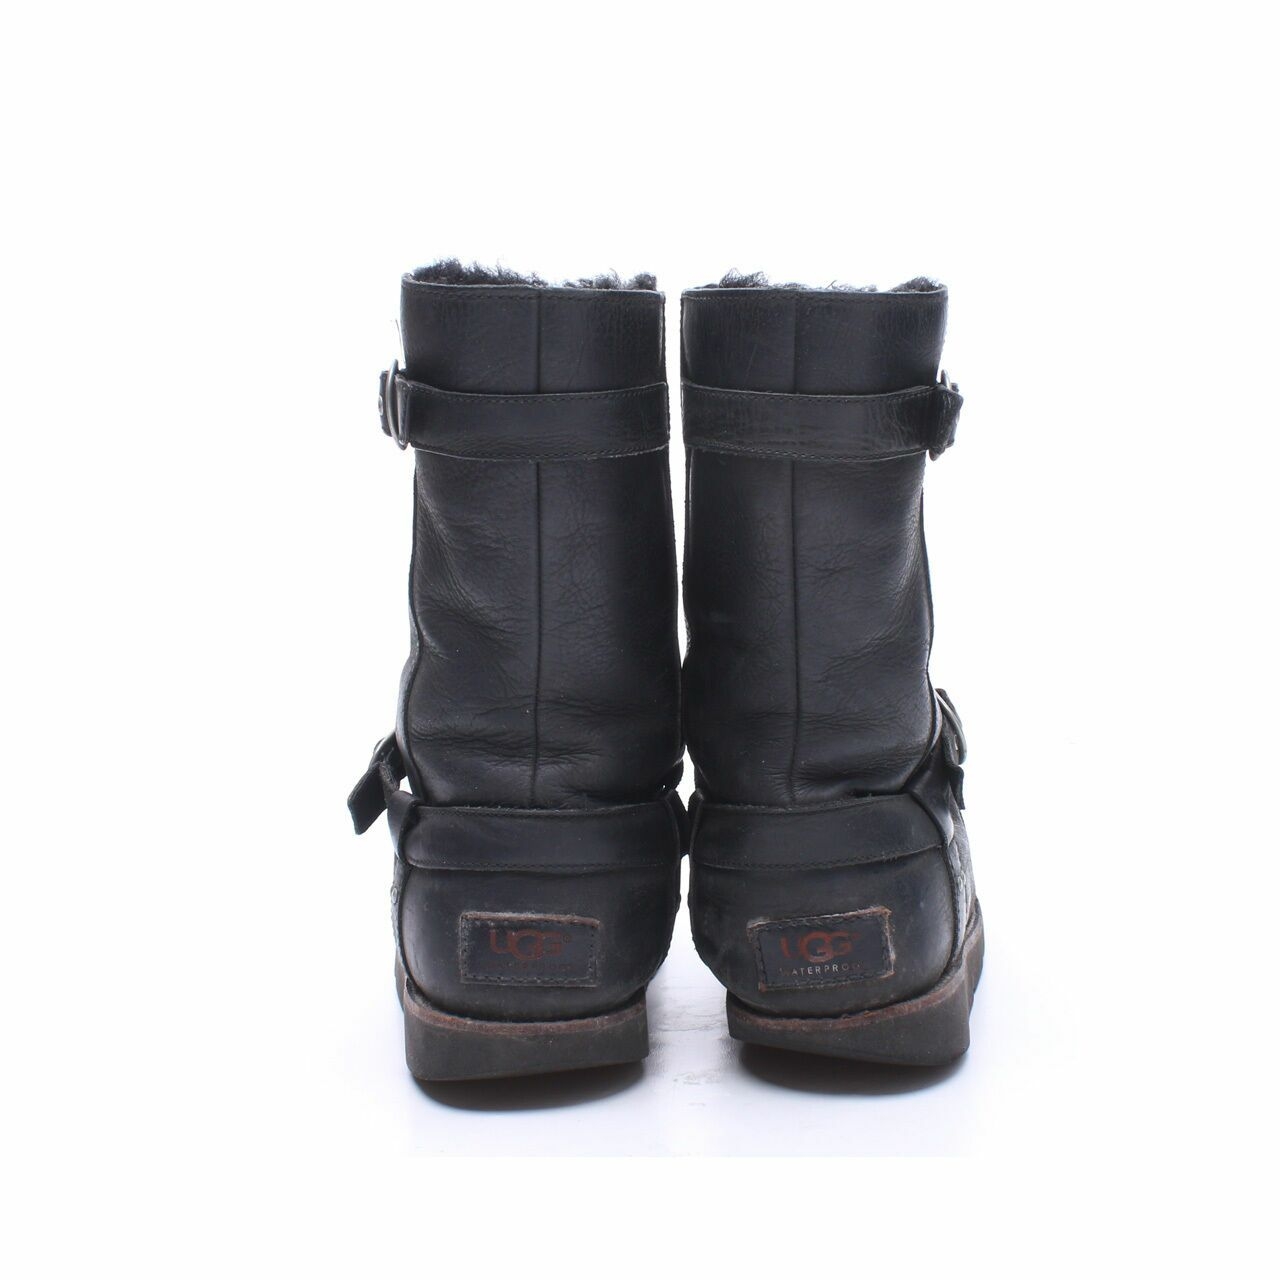 UGG Black Leather Fur Boots